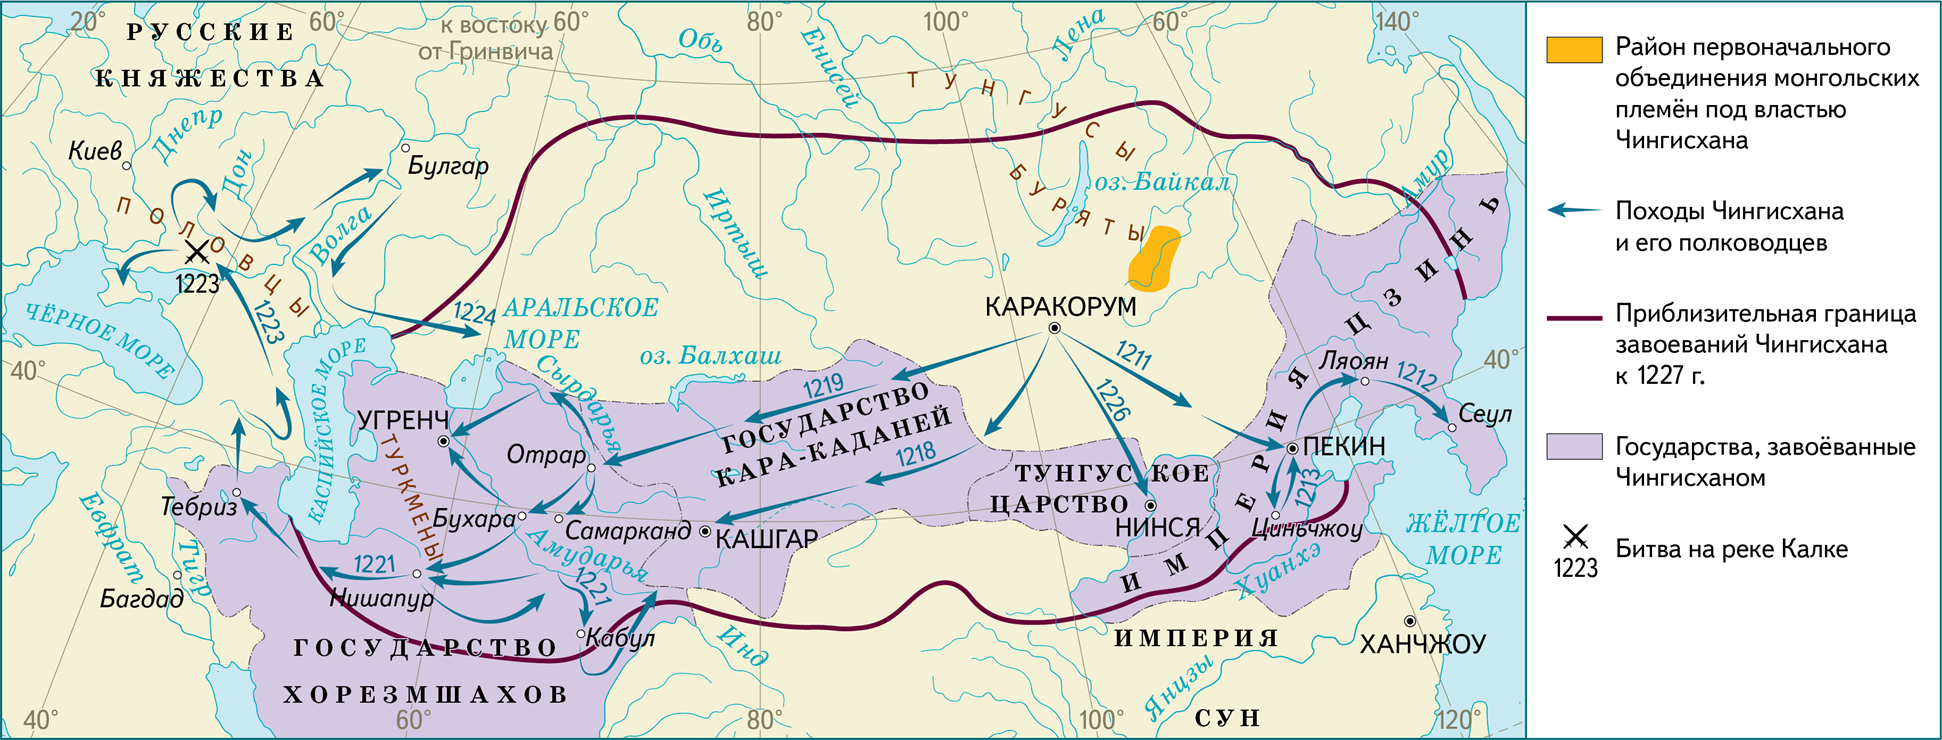 По мере продвижения на восток. Монгольская Империя 1227. Завоевания Чингисхана карта. Карта завоеваний Монголии. 1206-1227 Правление Чингисхана.